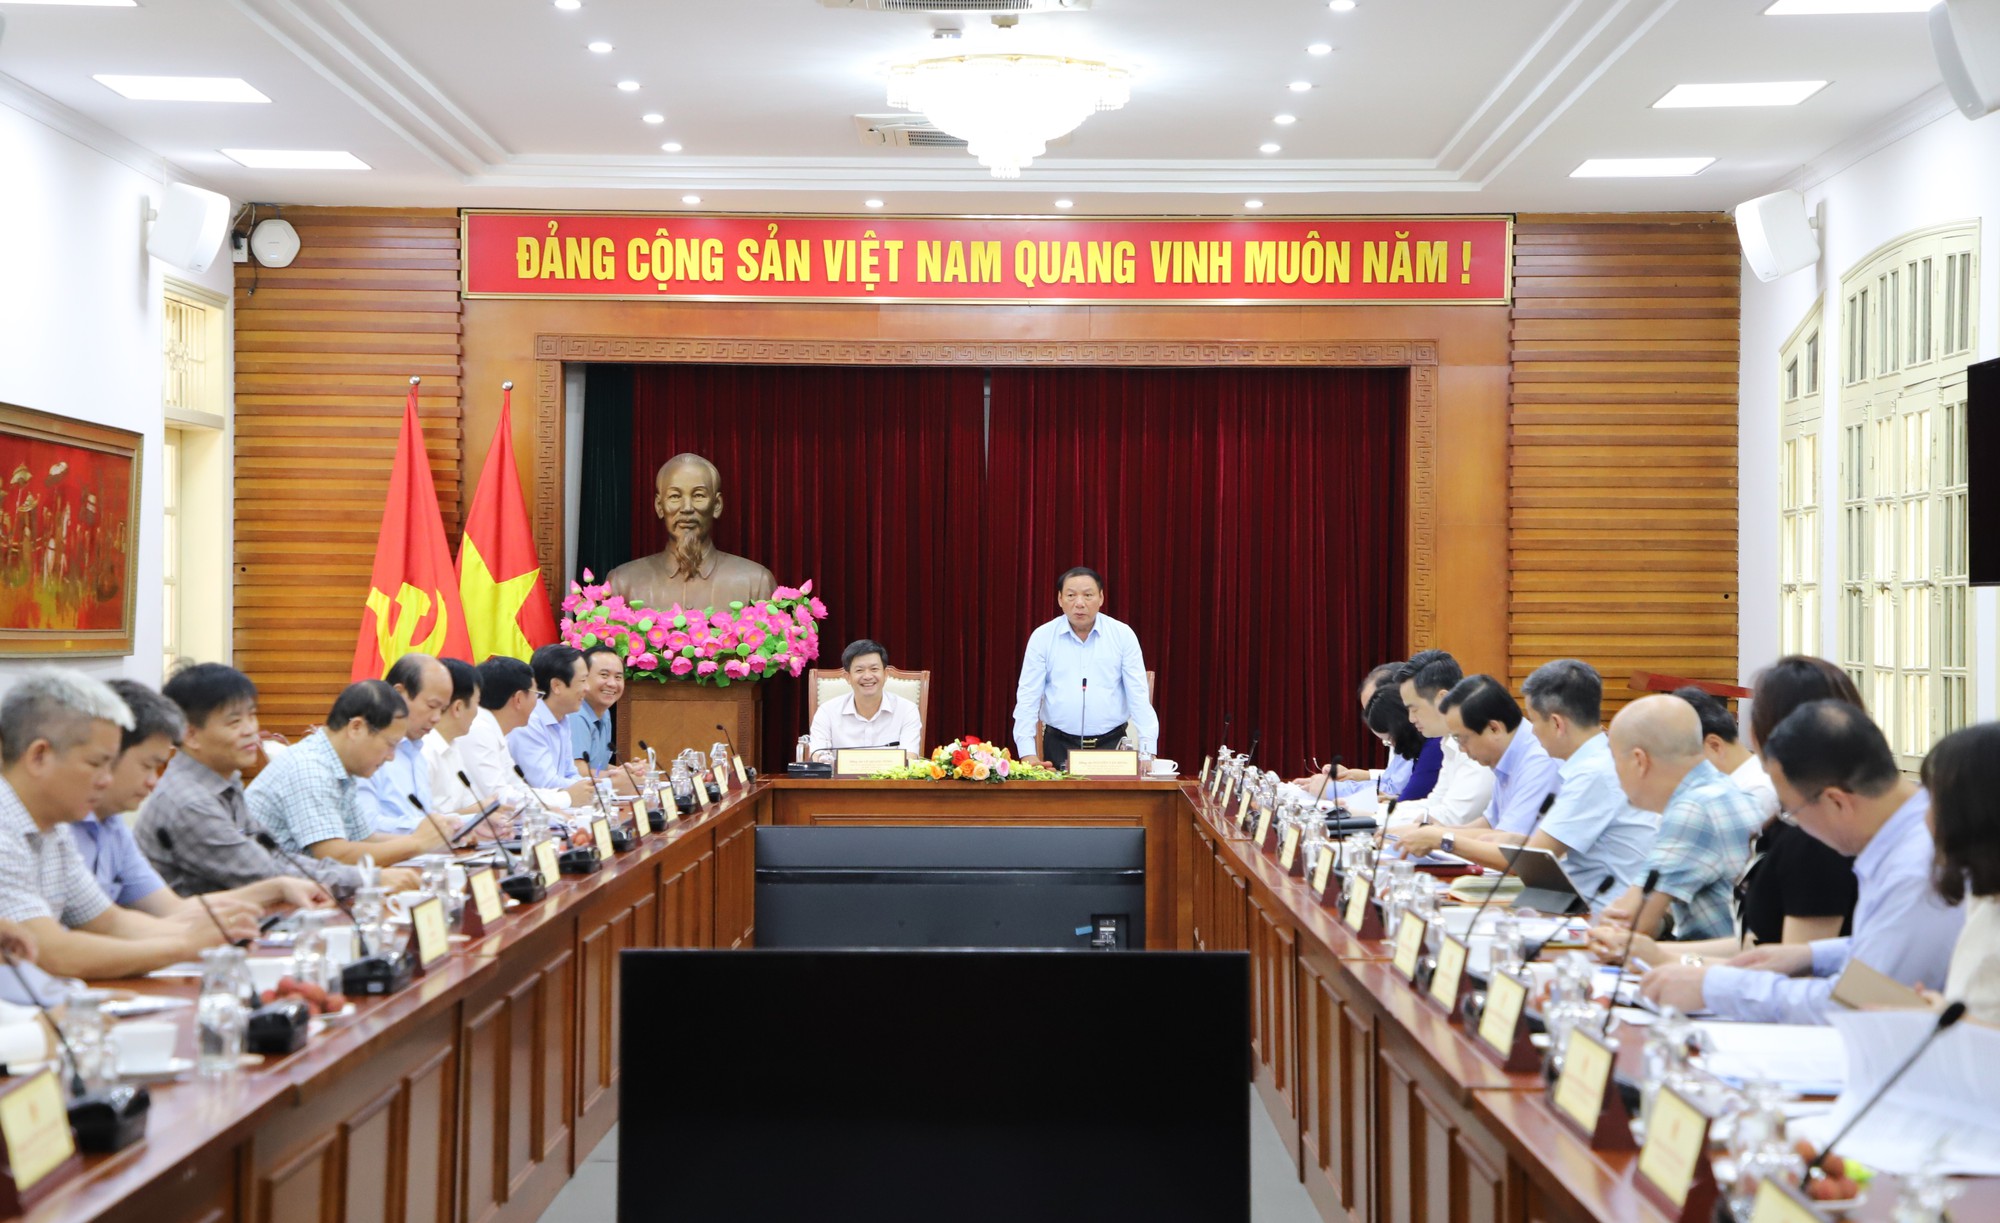 Bộ trưởng Nguyễn Văn Hùng: Nhân lên sức mạnh từ văn hoá và bằng văn hoá để phát triển tỉnh Quảng Trị